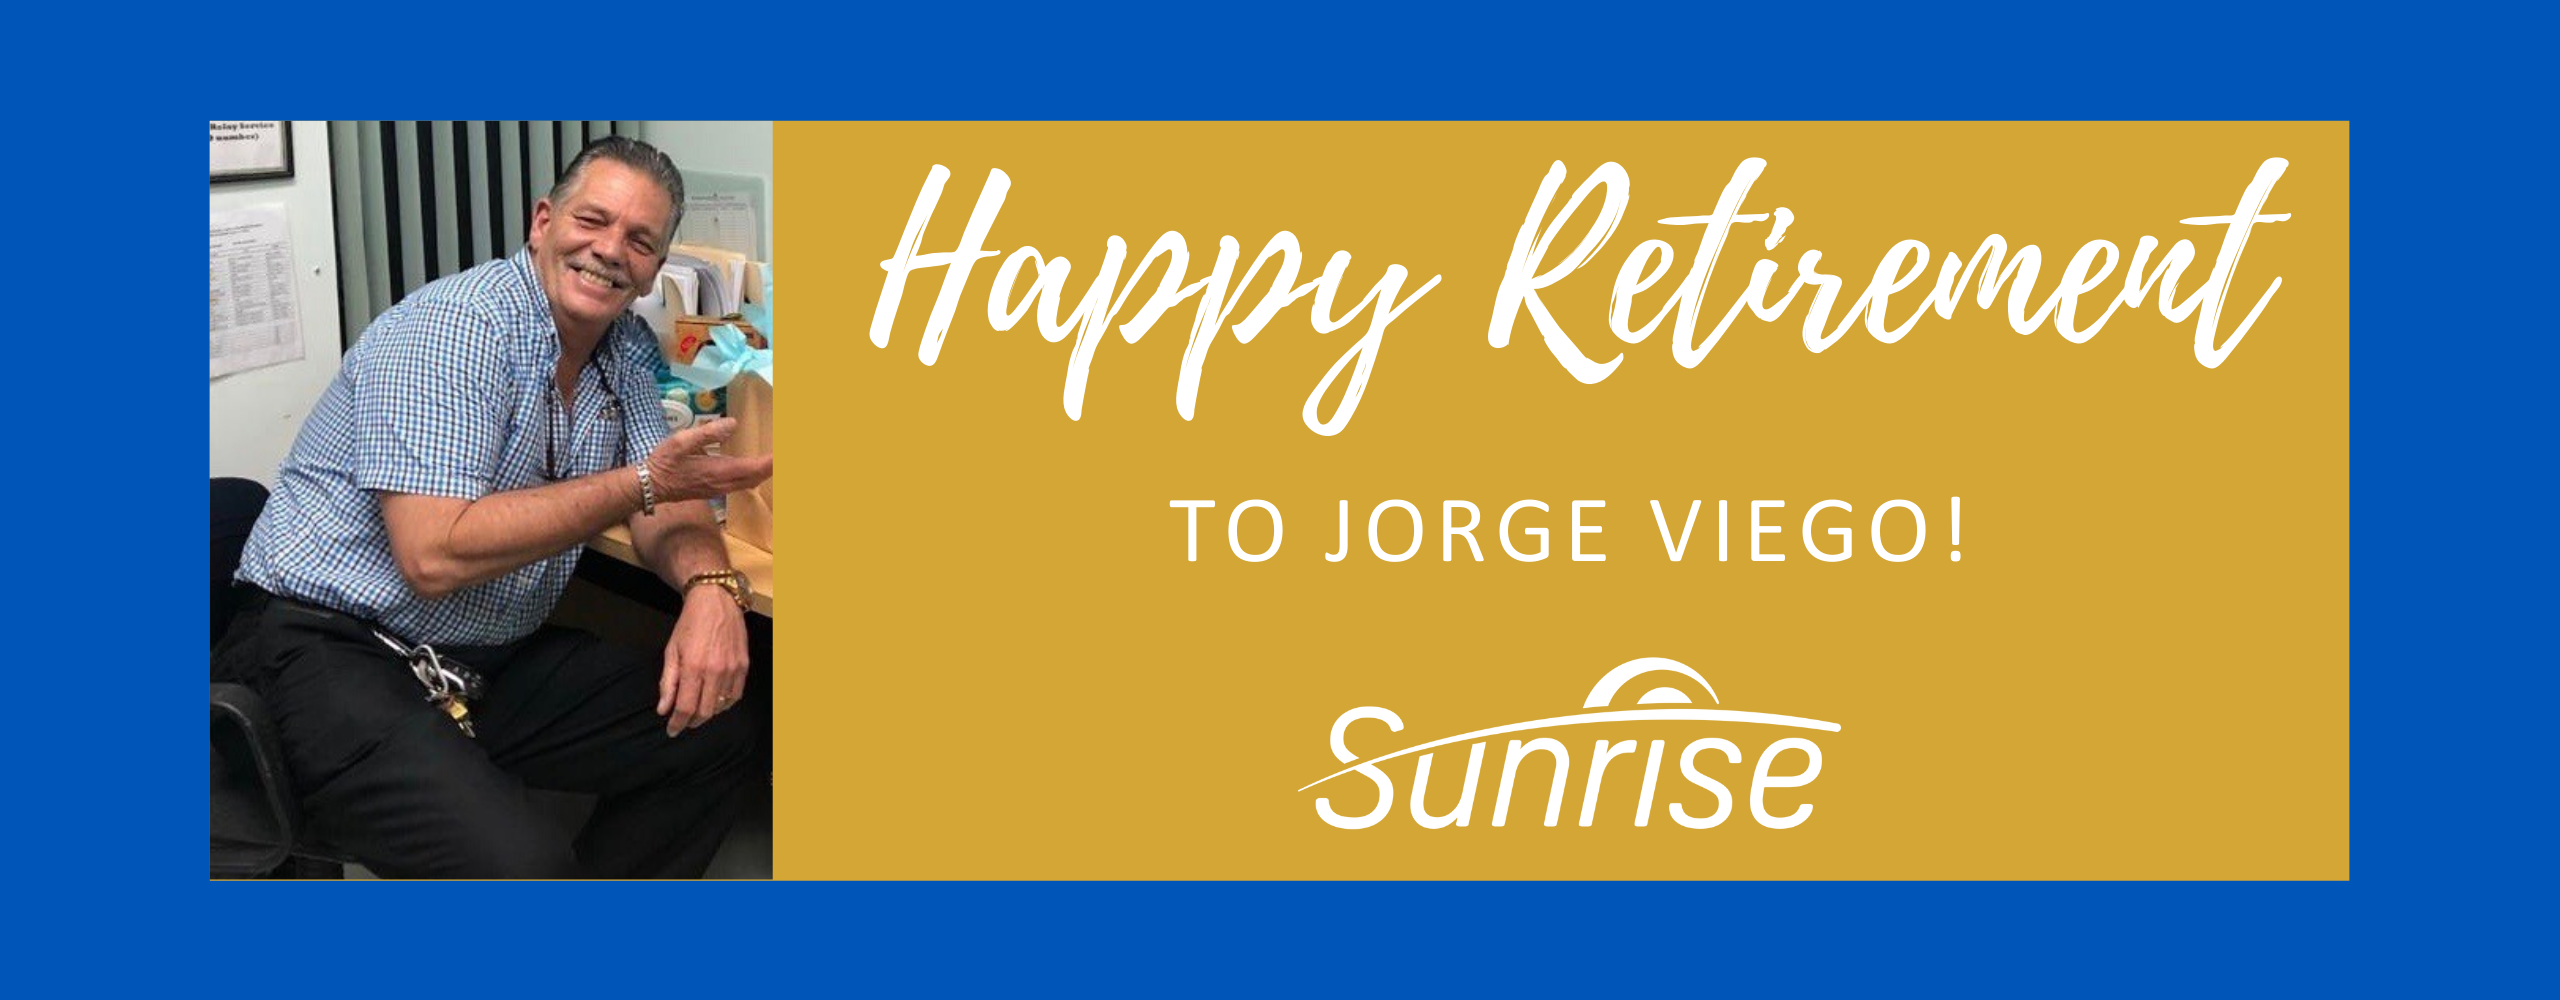 Happy Retirement, Jorge!